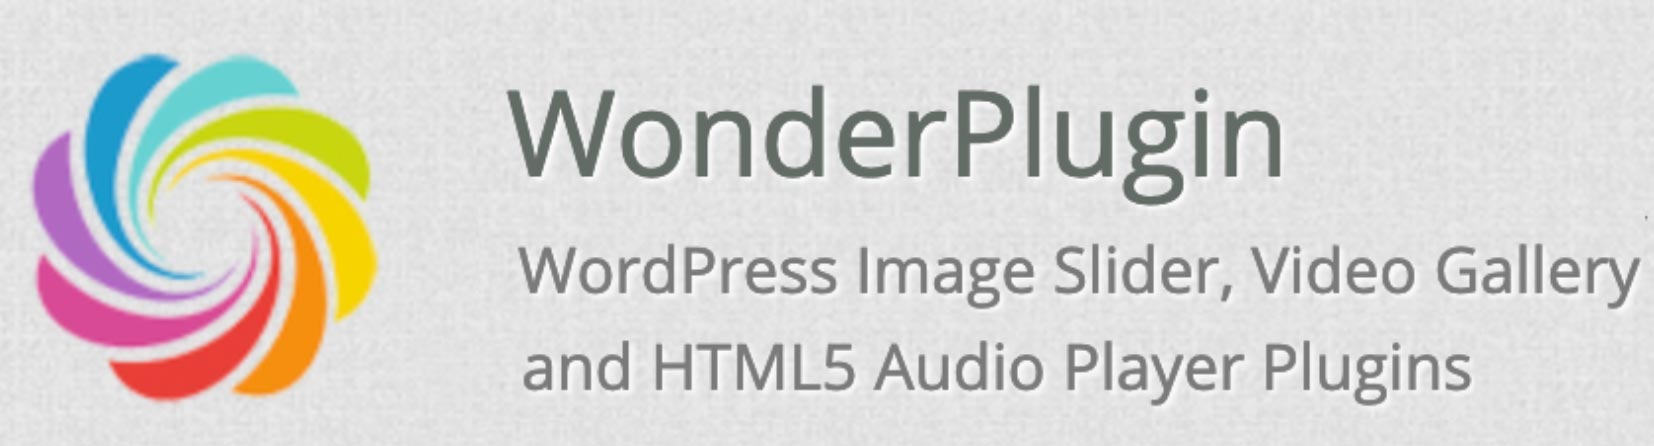 image de présentation de Wonder Plugin pour Wordpress